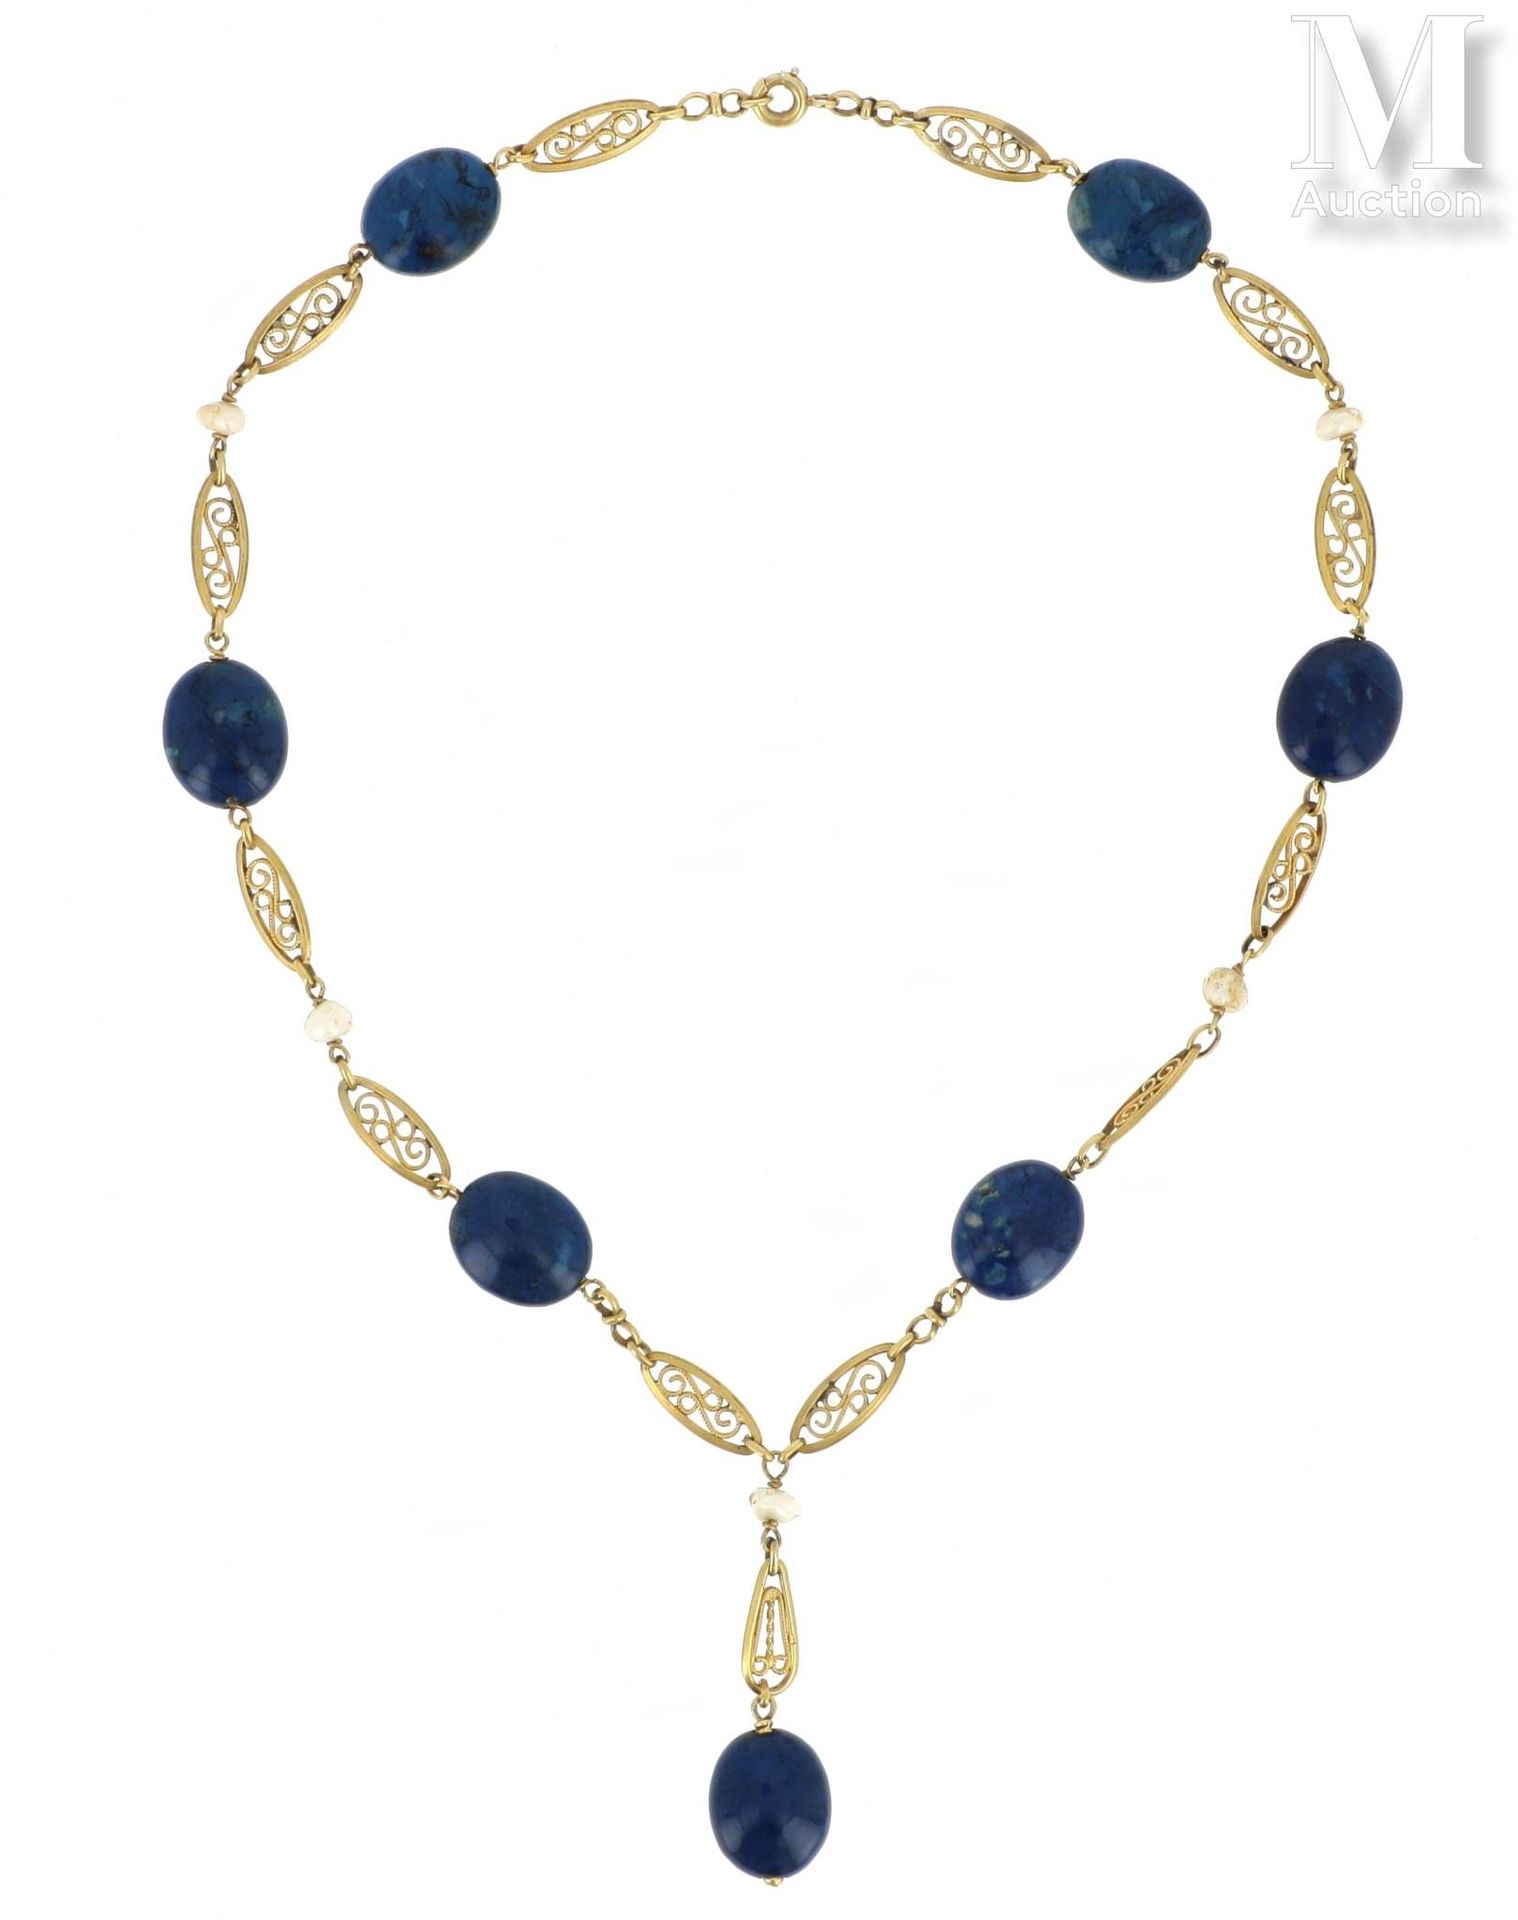 COLLIER 18K黄金（750°/°）项链，镂空和丝状navette链接，穿插着椭圆形蓝色硬石的凸圆形，其中一个是吊坠，以及小的巴洛克珍珠。

毛重：21,&hellip;